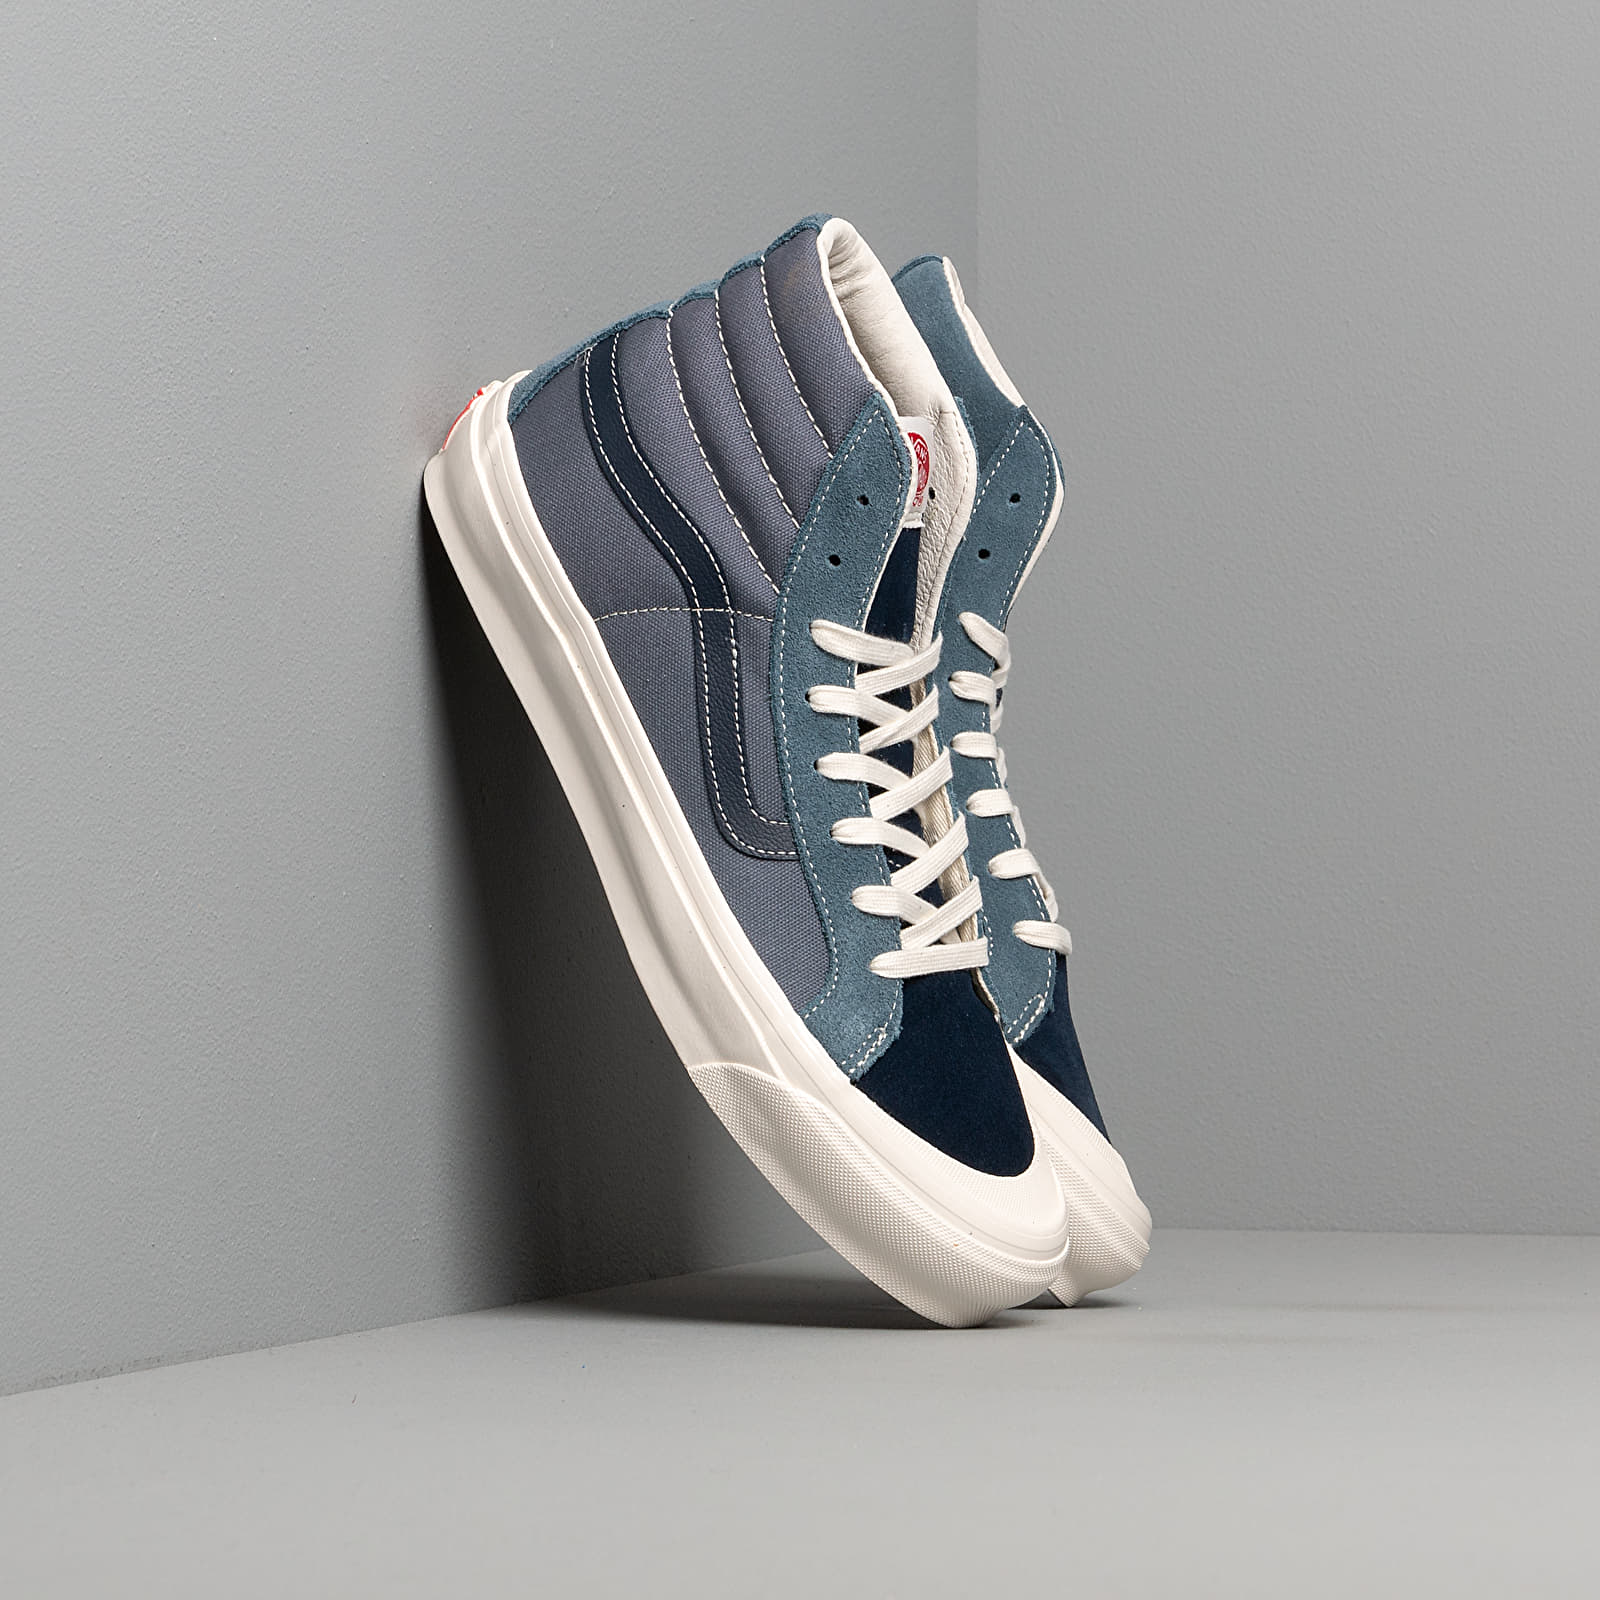 Men's shoes Vans Vault OG Style 138 LX (Suede) Blue/ Mirage Blue